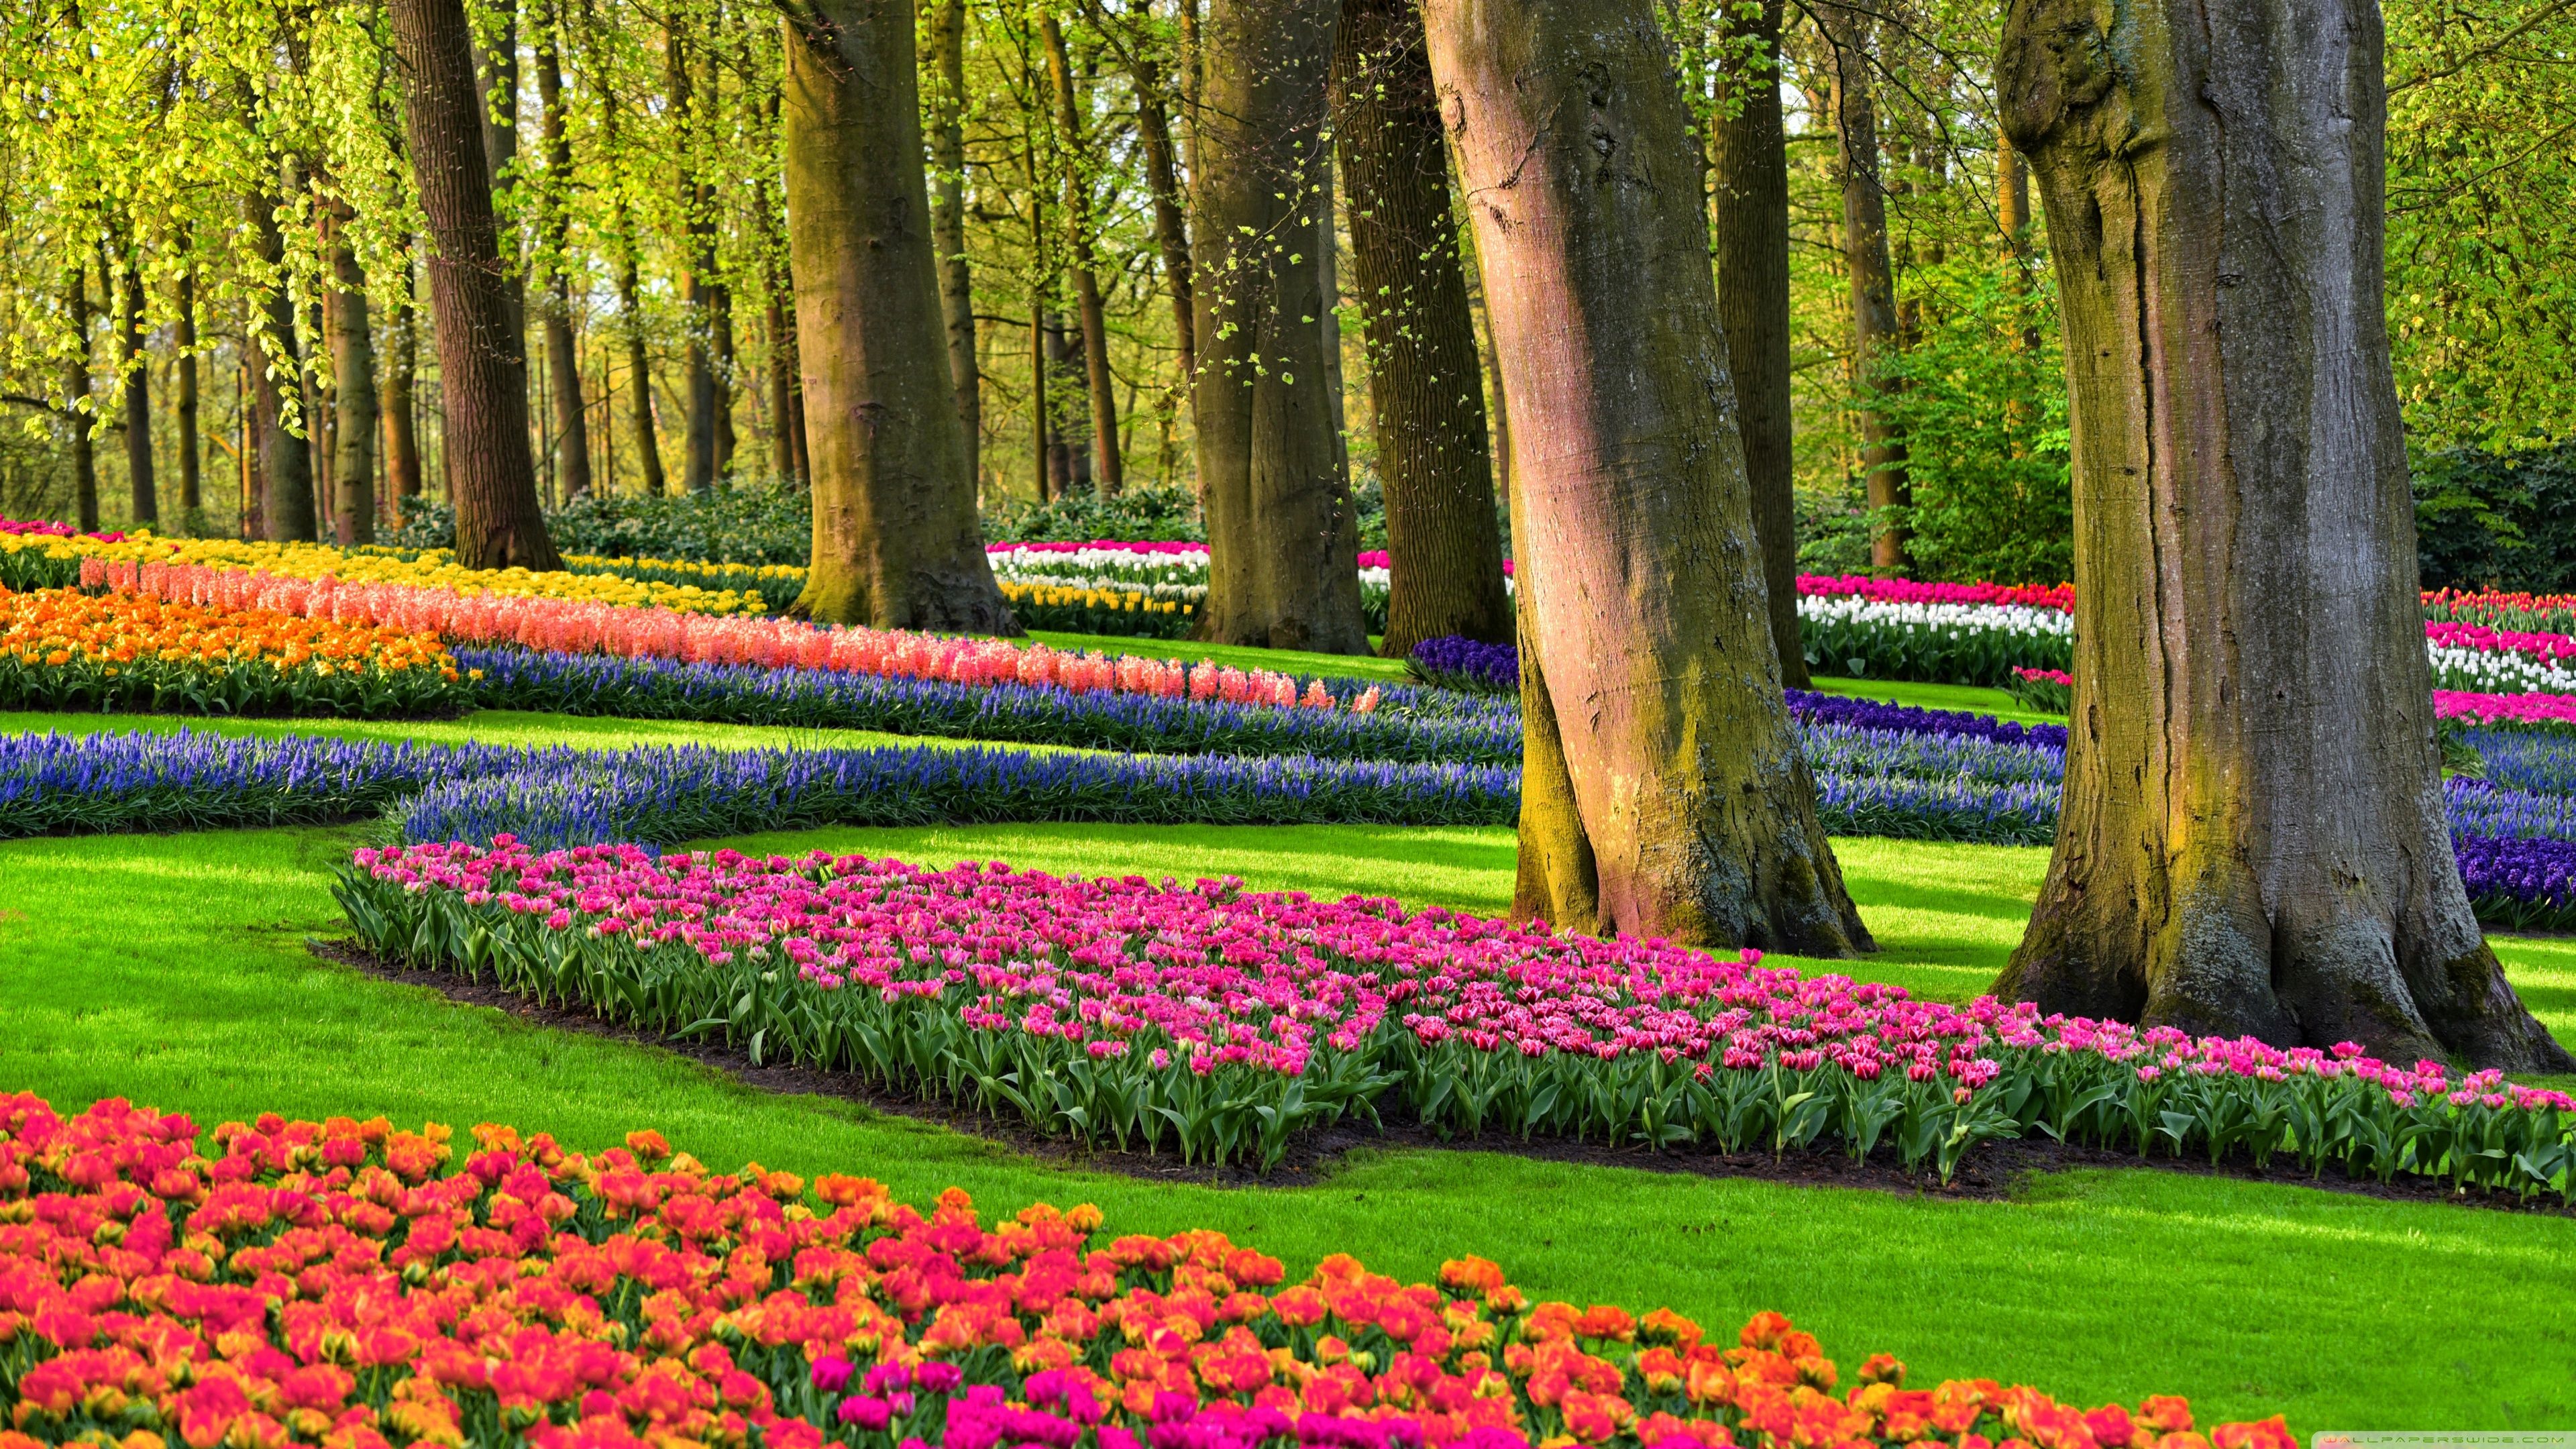 Spring Garden Netherlands , HD Wallpaper & Backgrounds